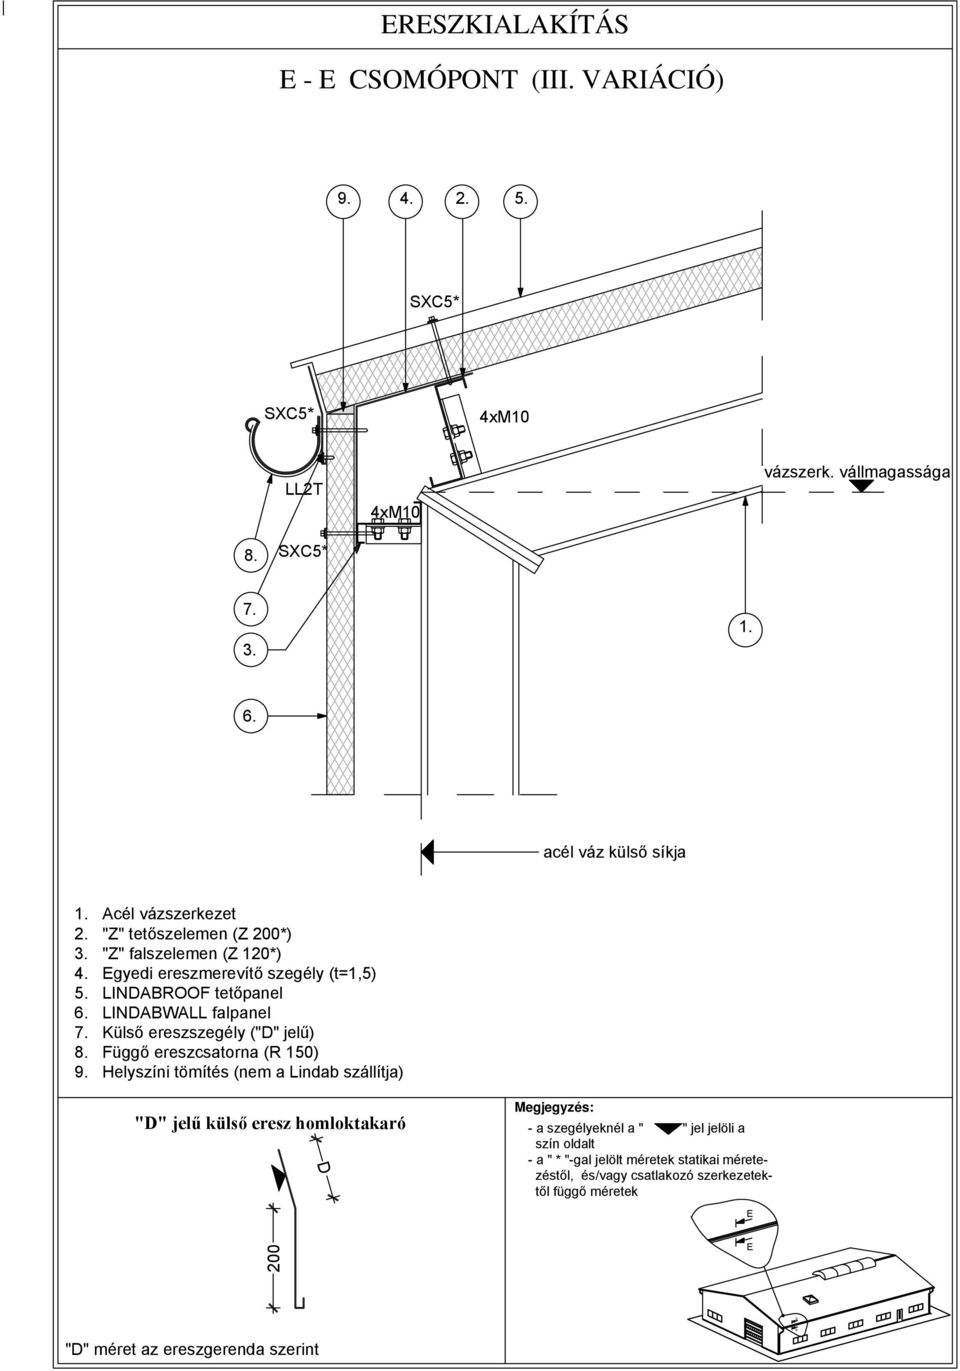 INDABROOF tetőpanel INDABWA falpanel Külső ereszszegély ("D" jelű) 8. Függő ereszcsatorna (R 150) 9.